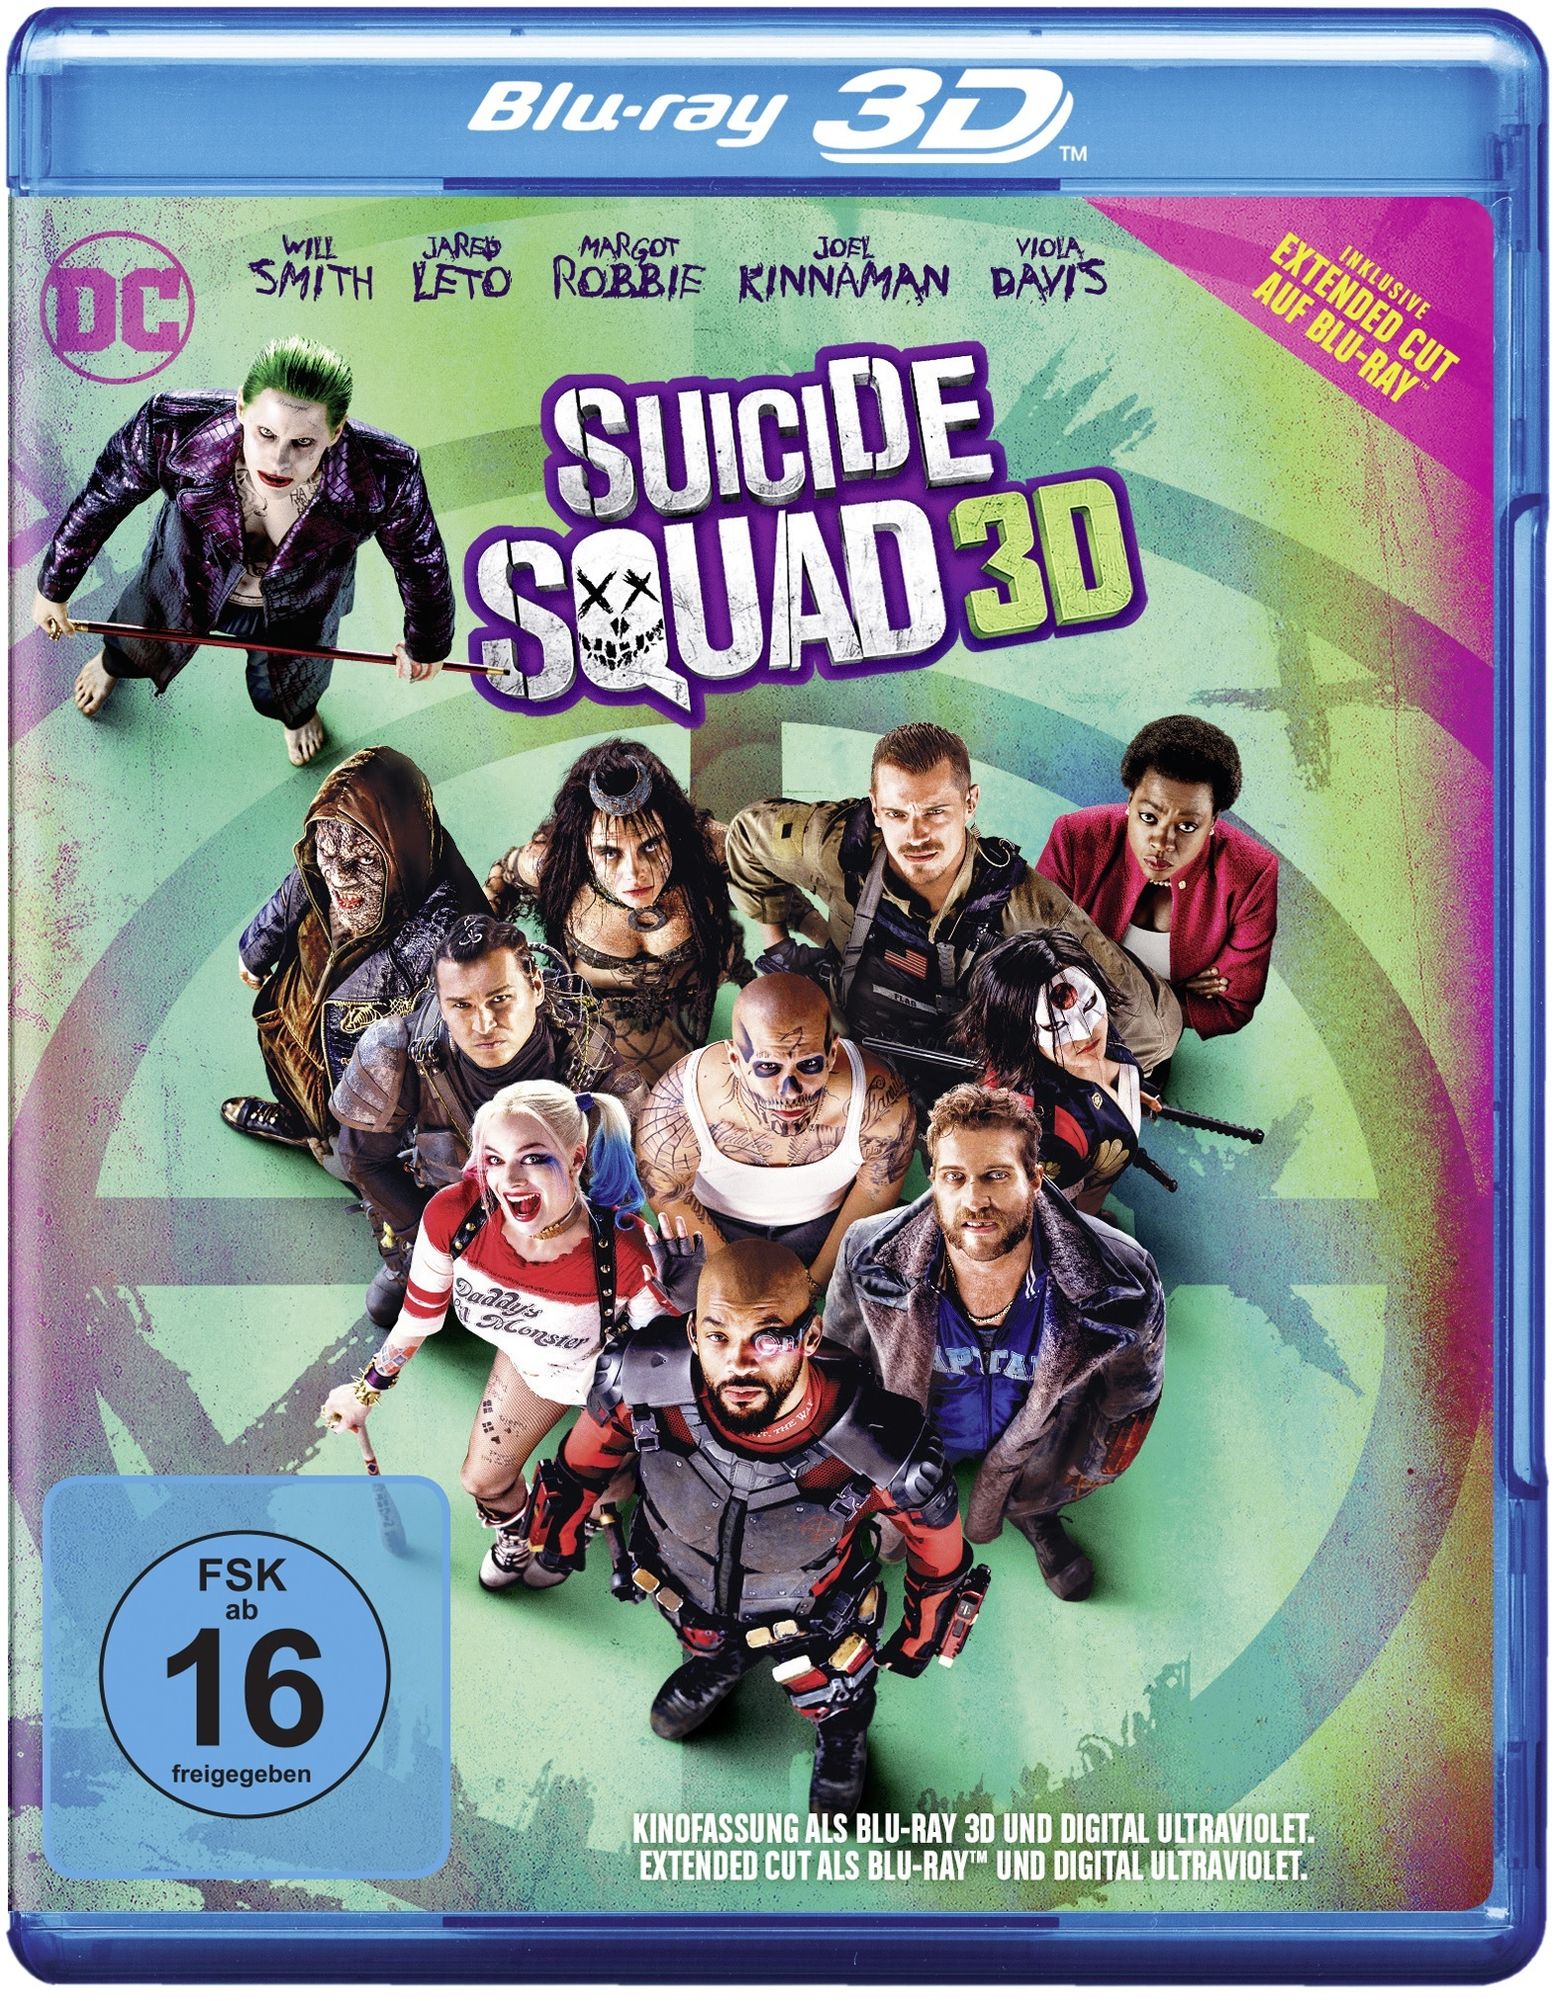 Suicide Squad 2016 - 3D-Version Blu-ray bei Weltbild.at kaufen